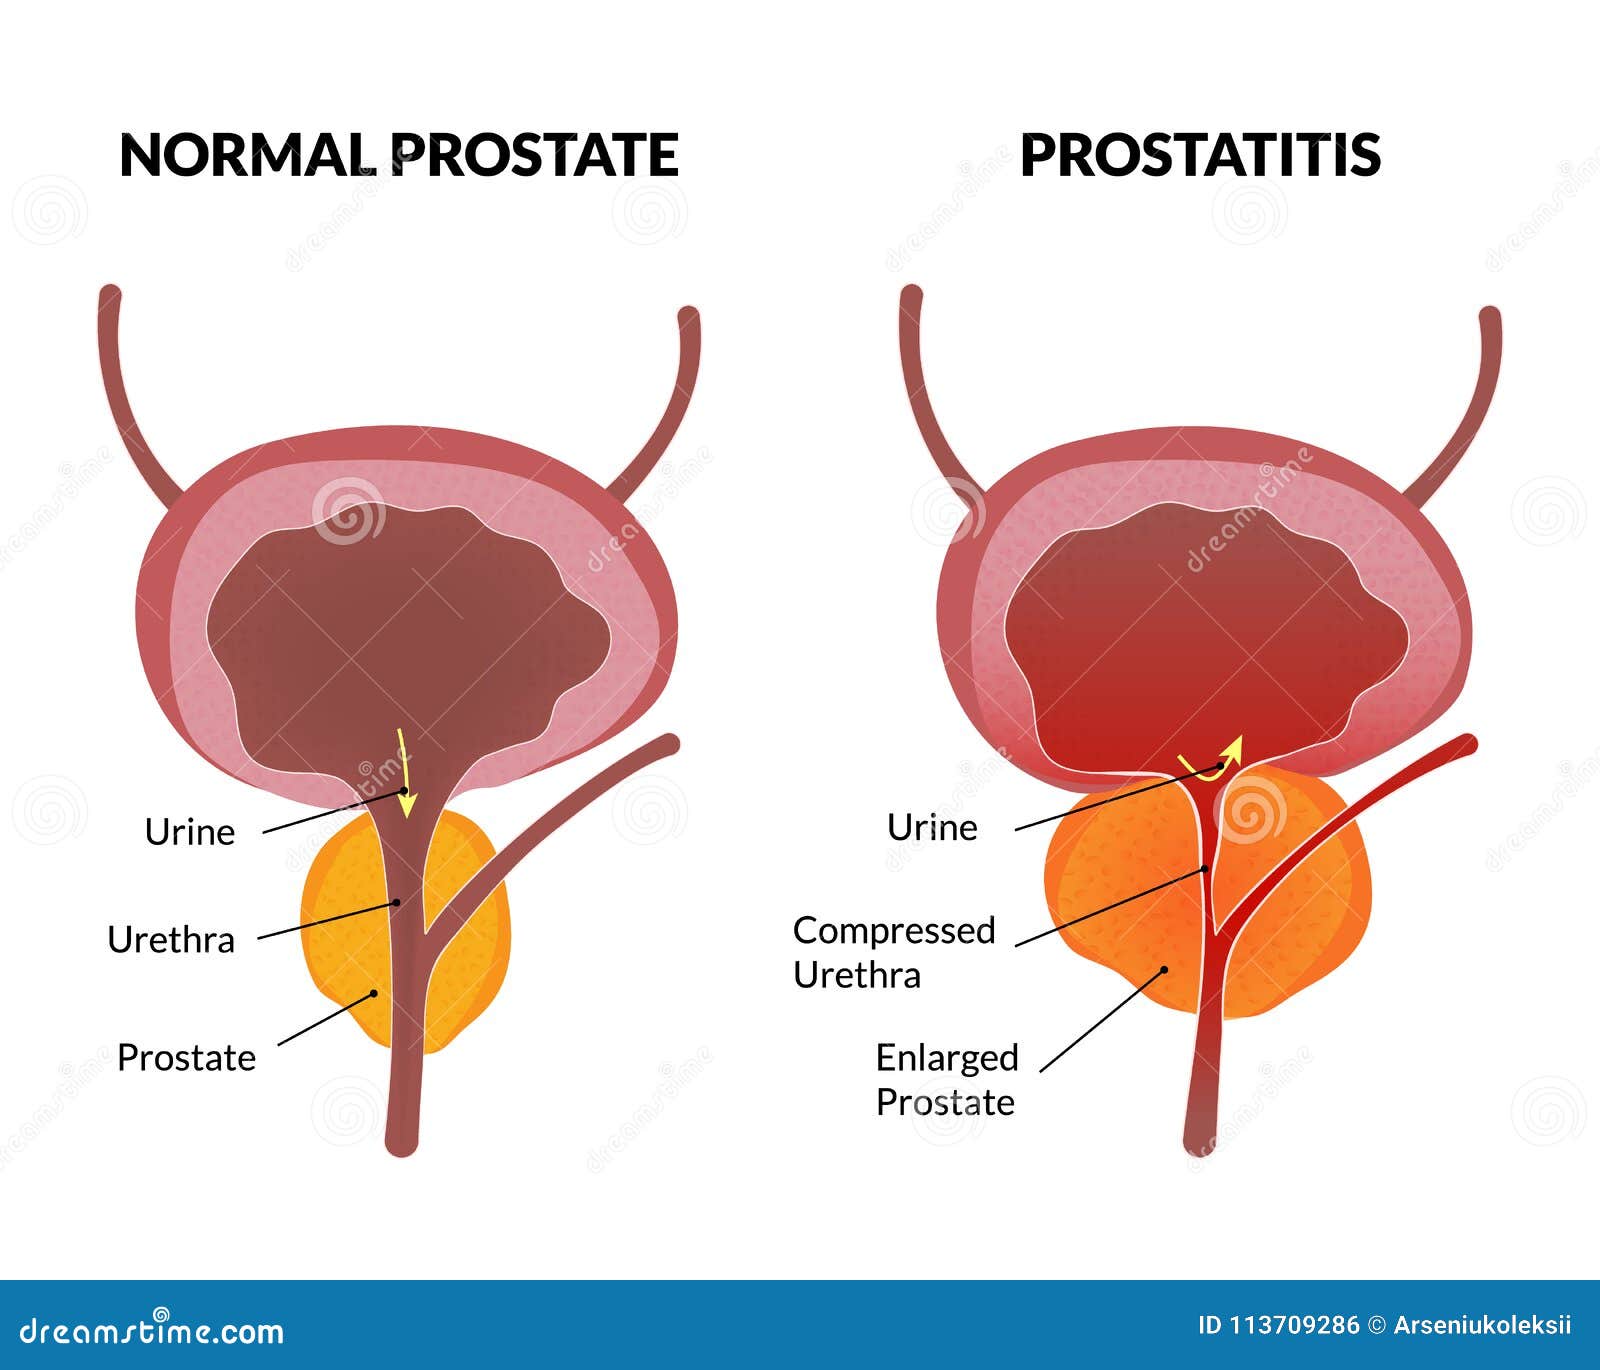 asymmetrical prostate causes prostatitis és viszketés a hátsó részben